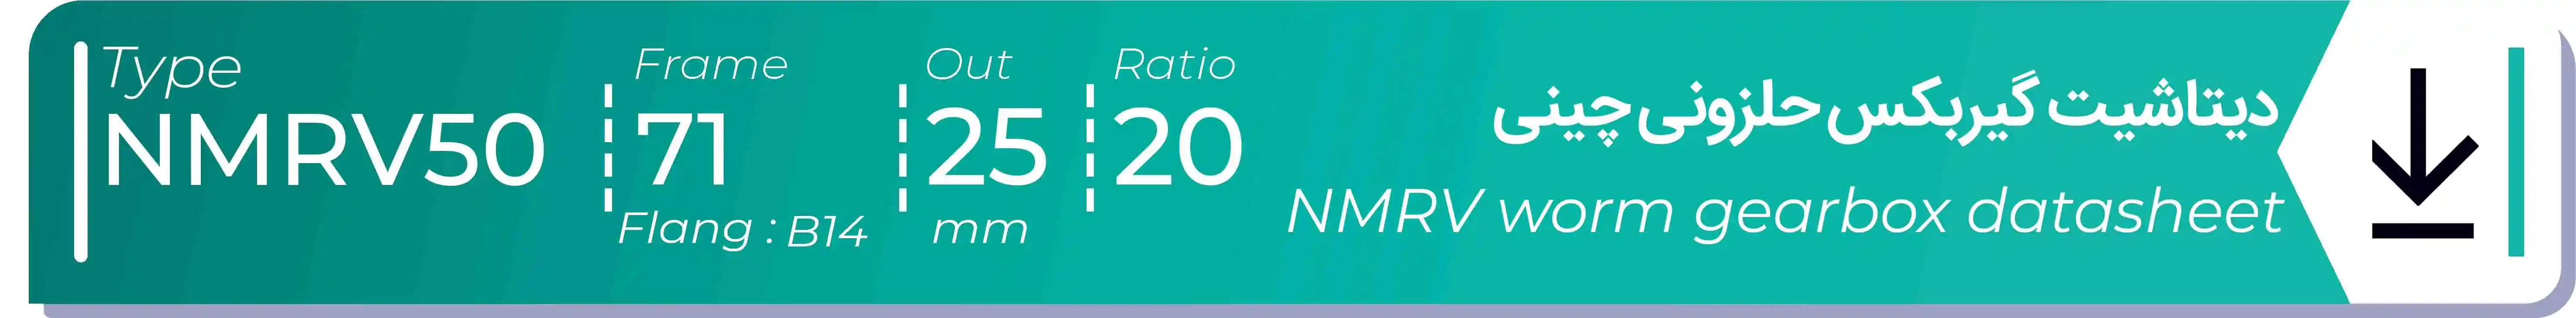  دیتاشیت و مشخصات فنی گیربکس حلزونی چینی   NMRV50  -  با خروجی 25- میلی متر و نسبت20 و فریم 71